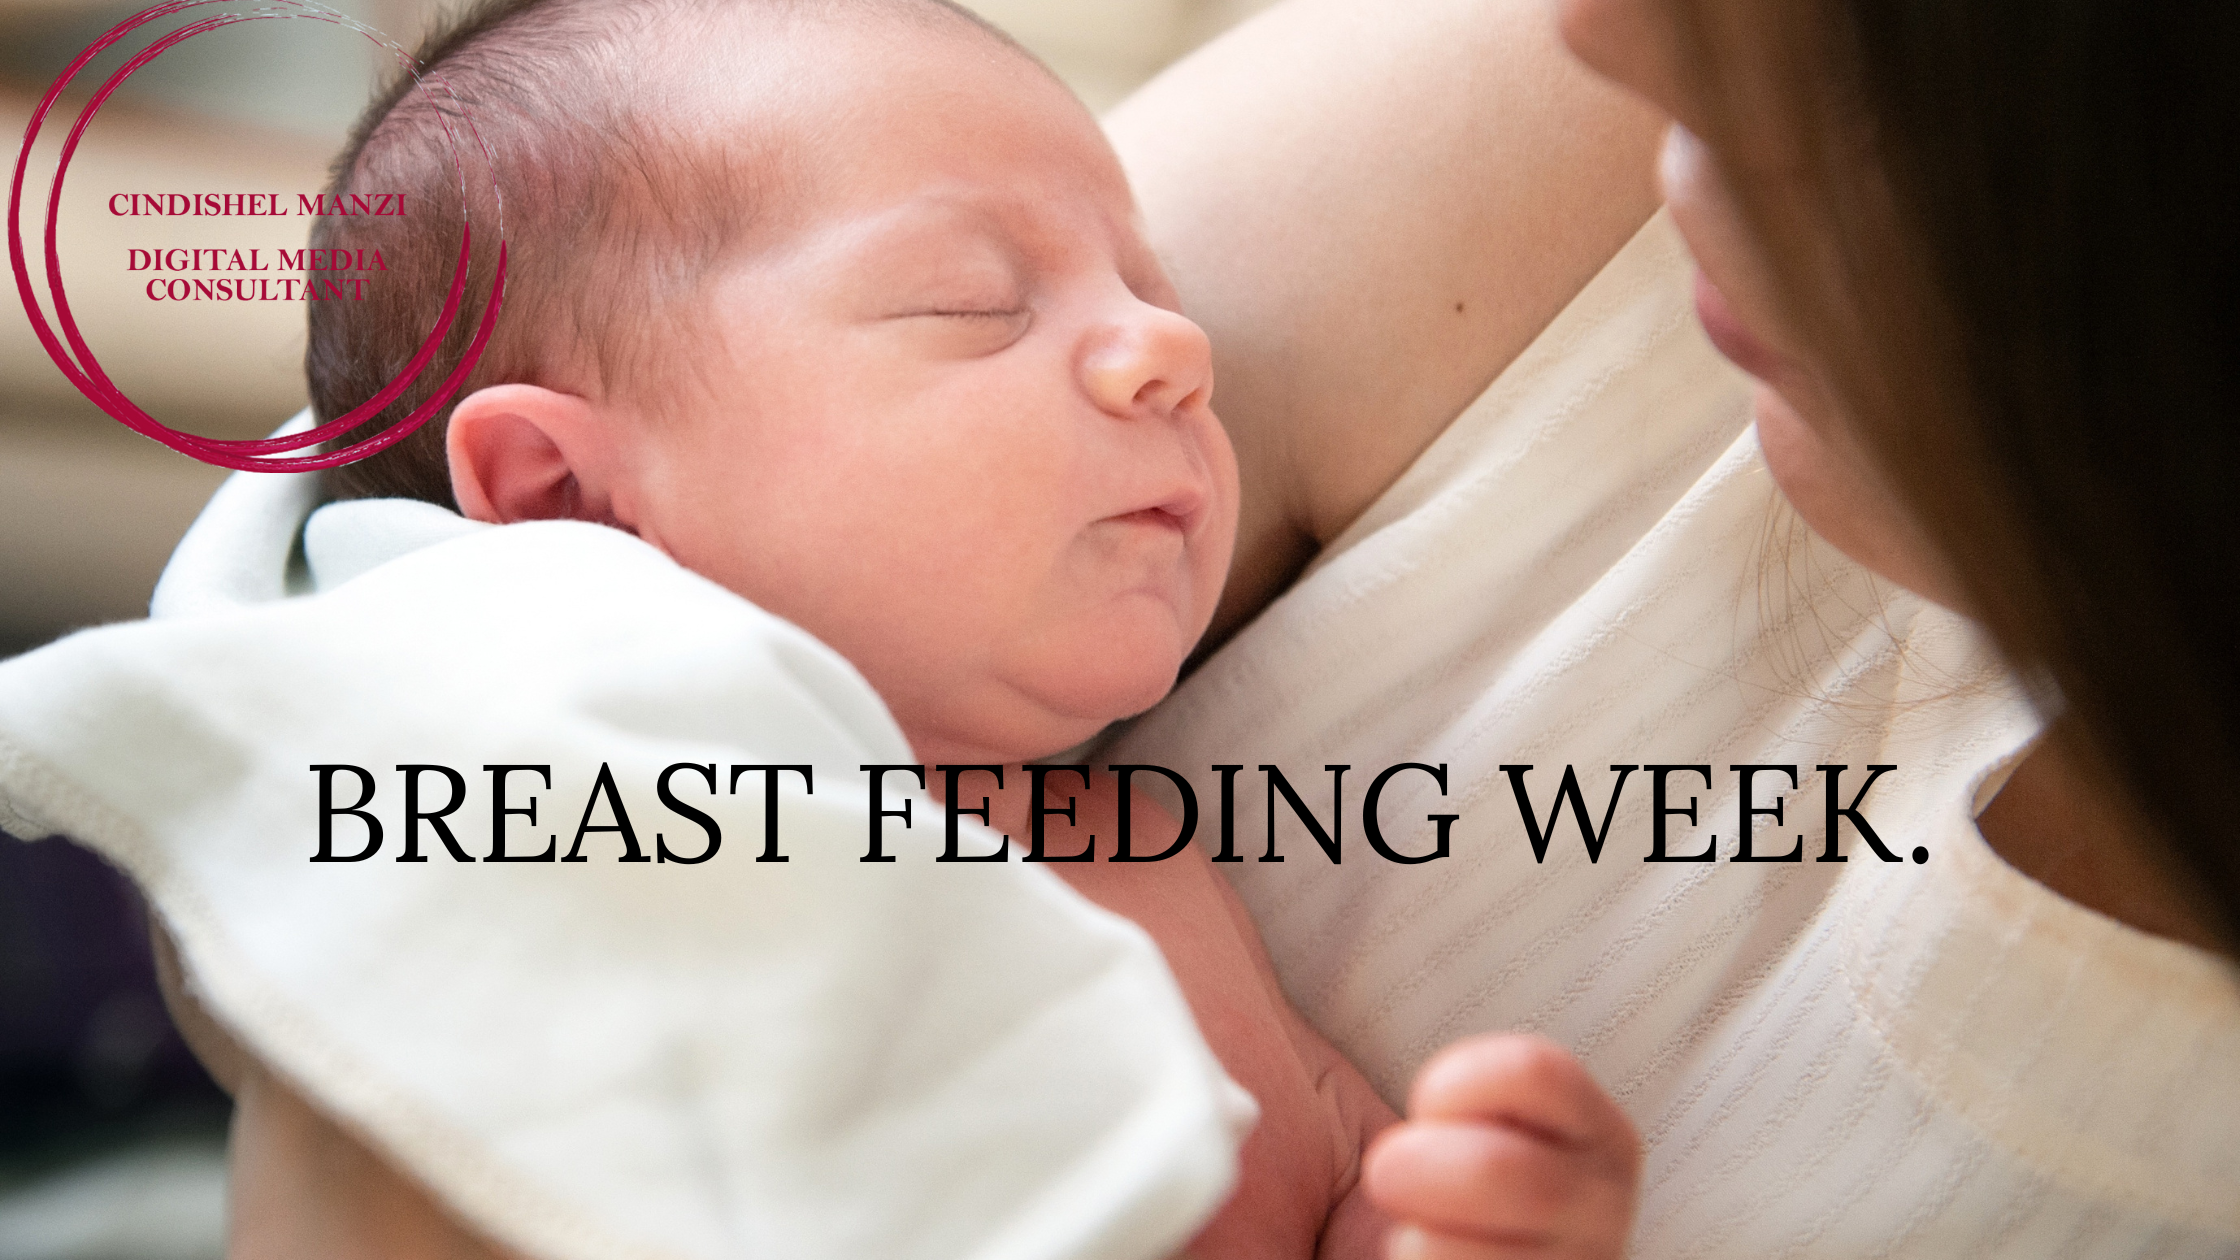 World breast feeding week